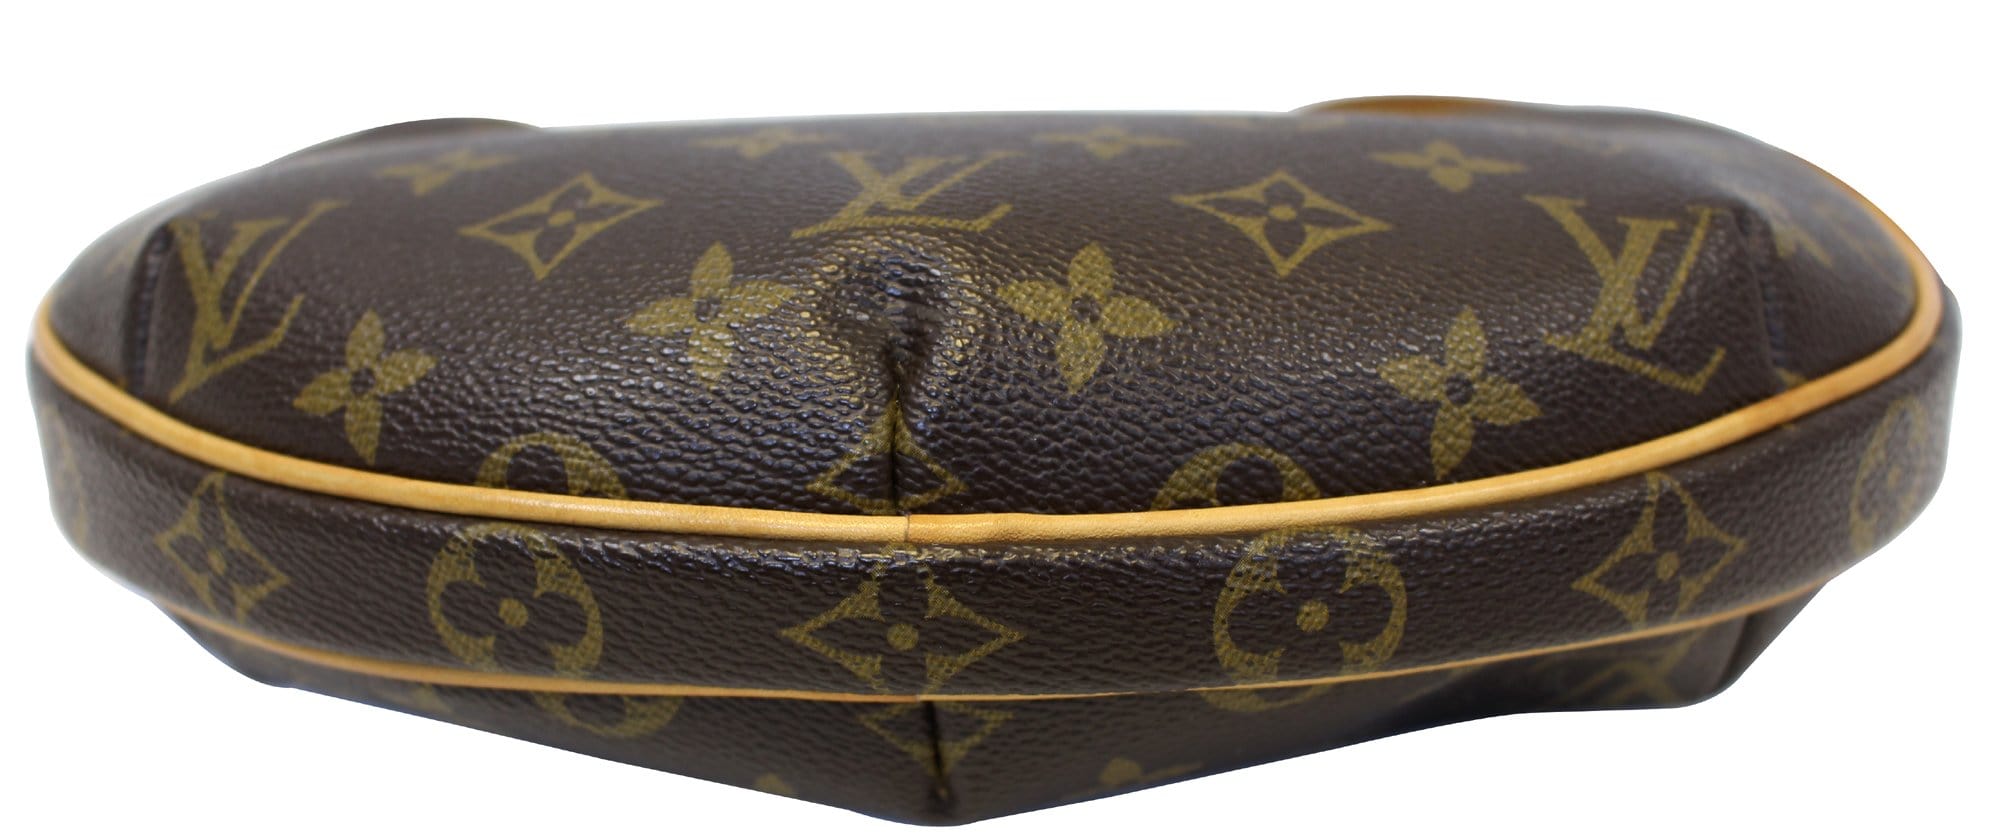 Louis Vuitton Monogram Croissant MM - Brown Shoulder Bags